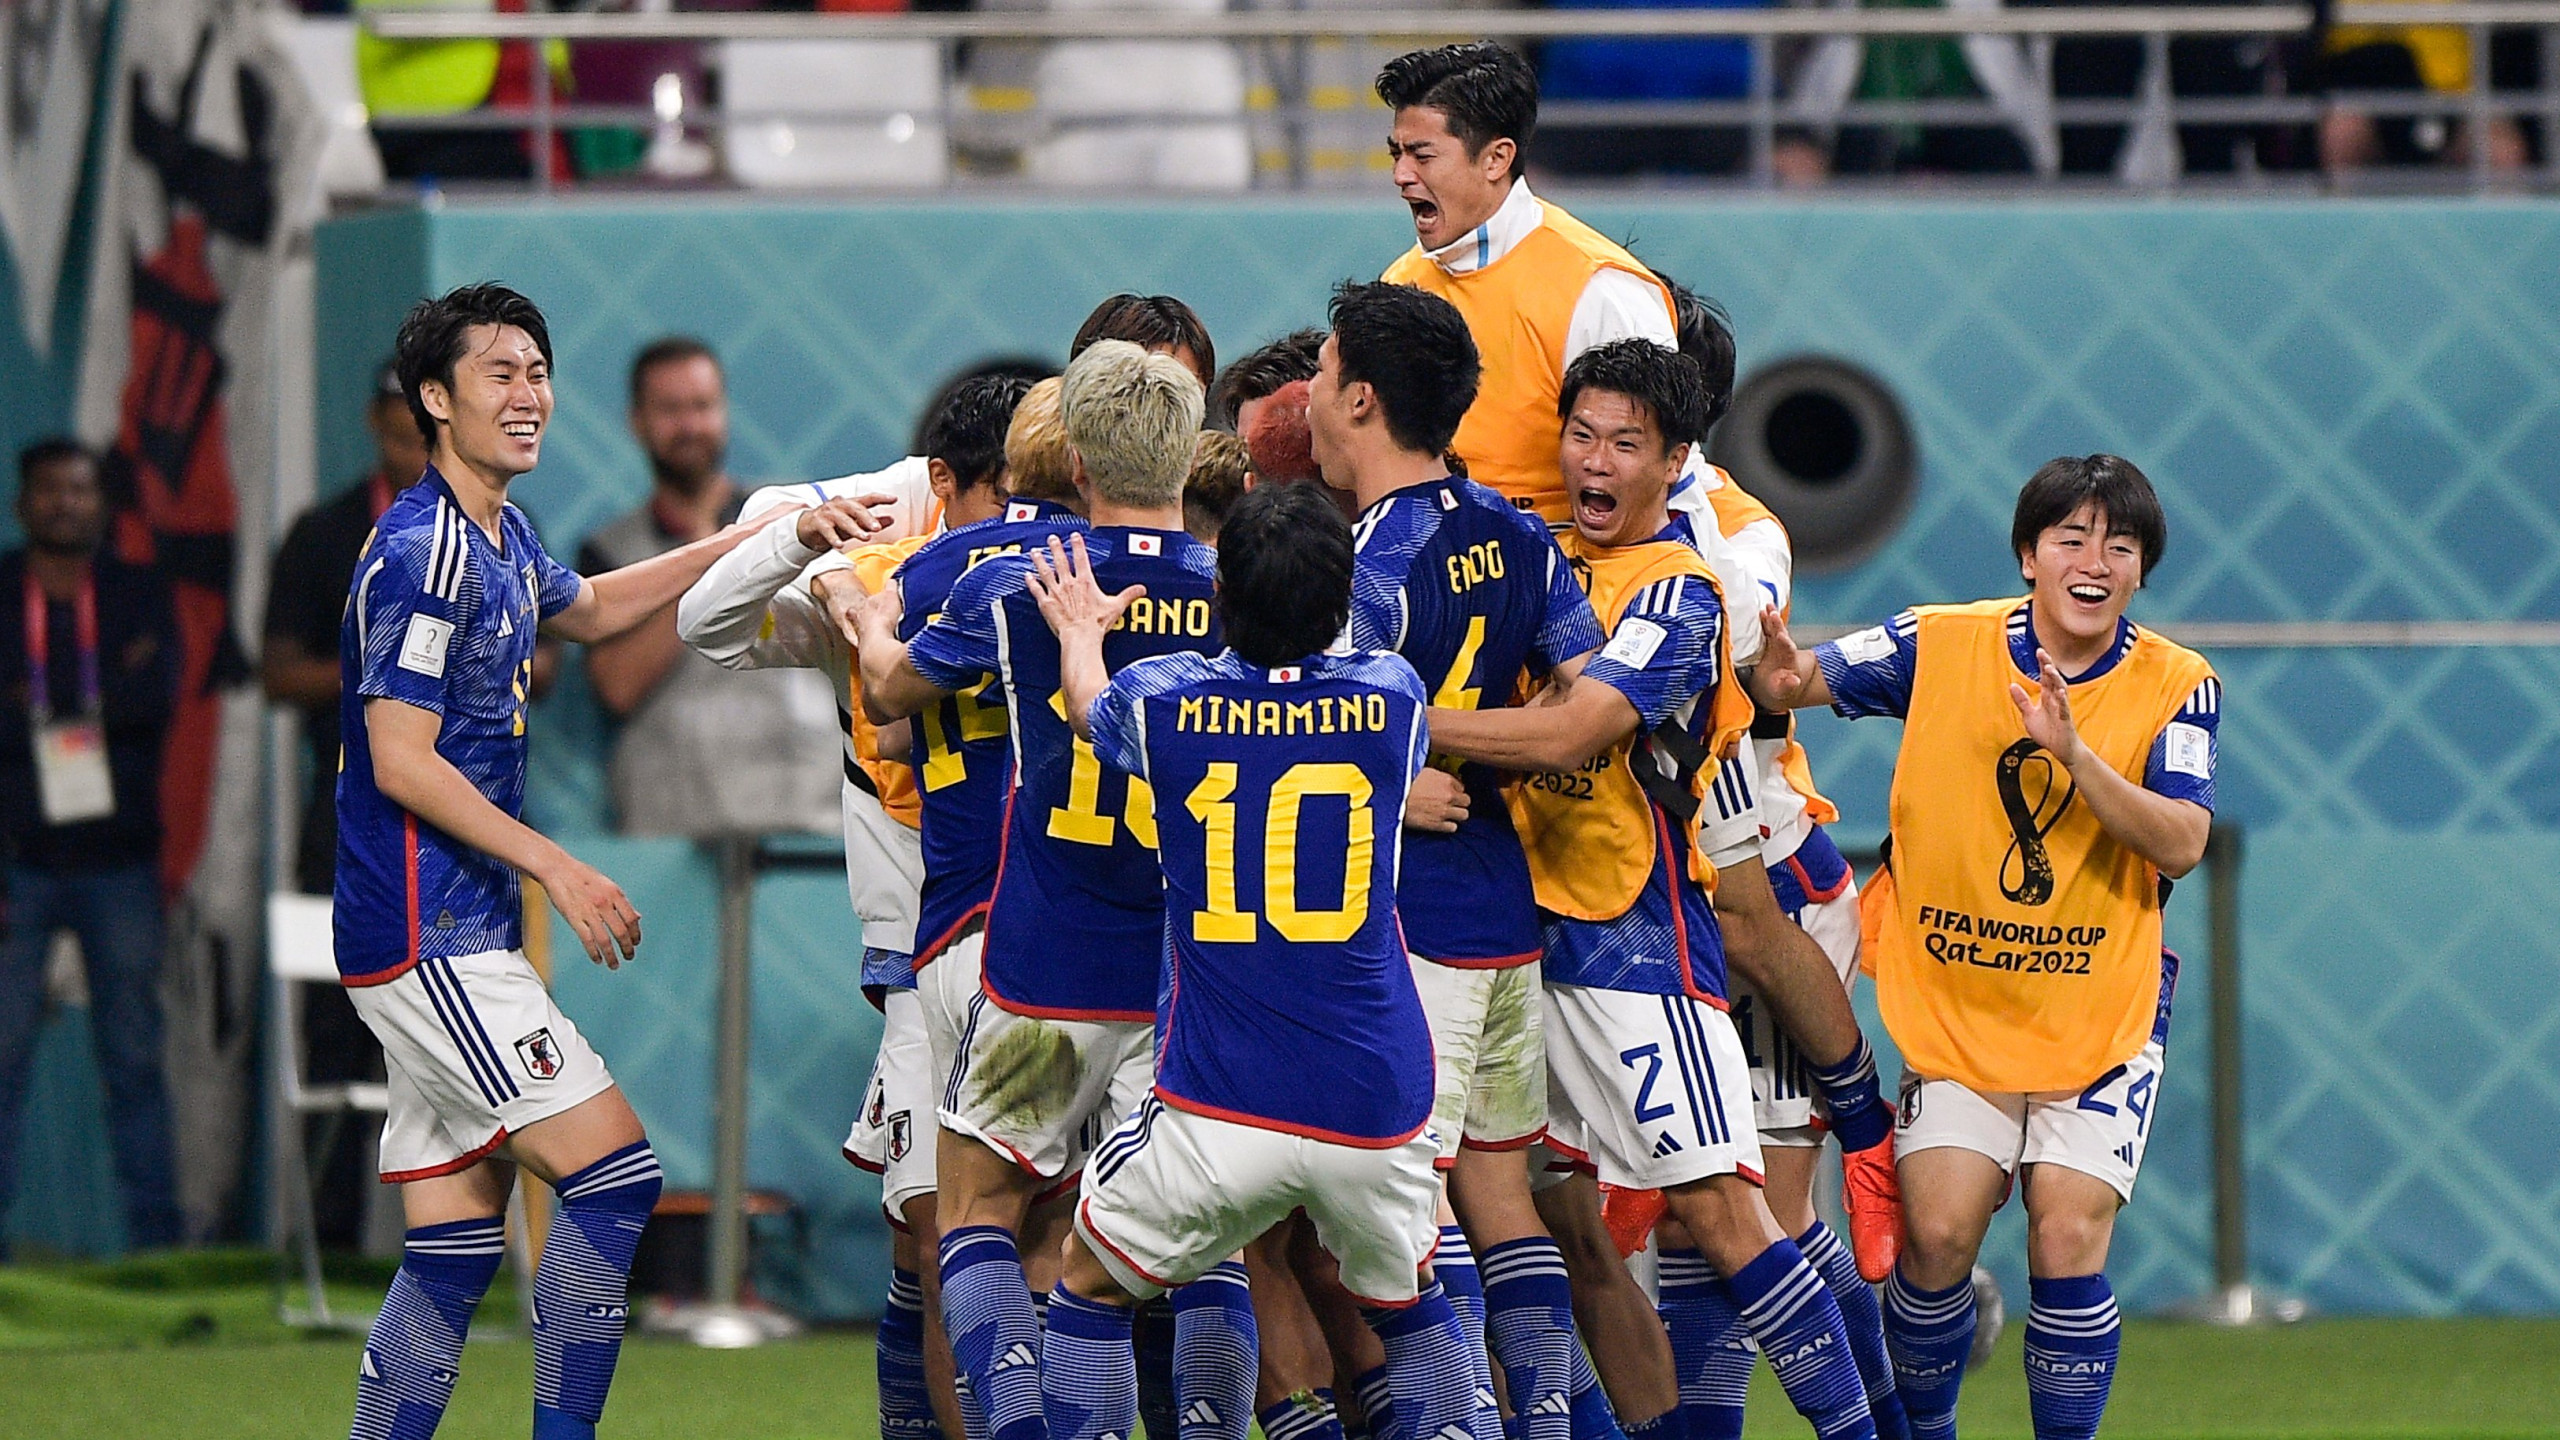 Com gols no final, Japão vence a Alemanha e quebra tabu histórico na Copa do Mundo